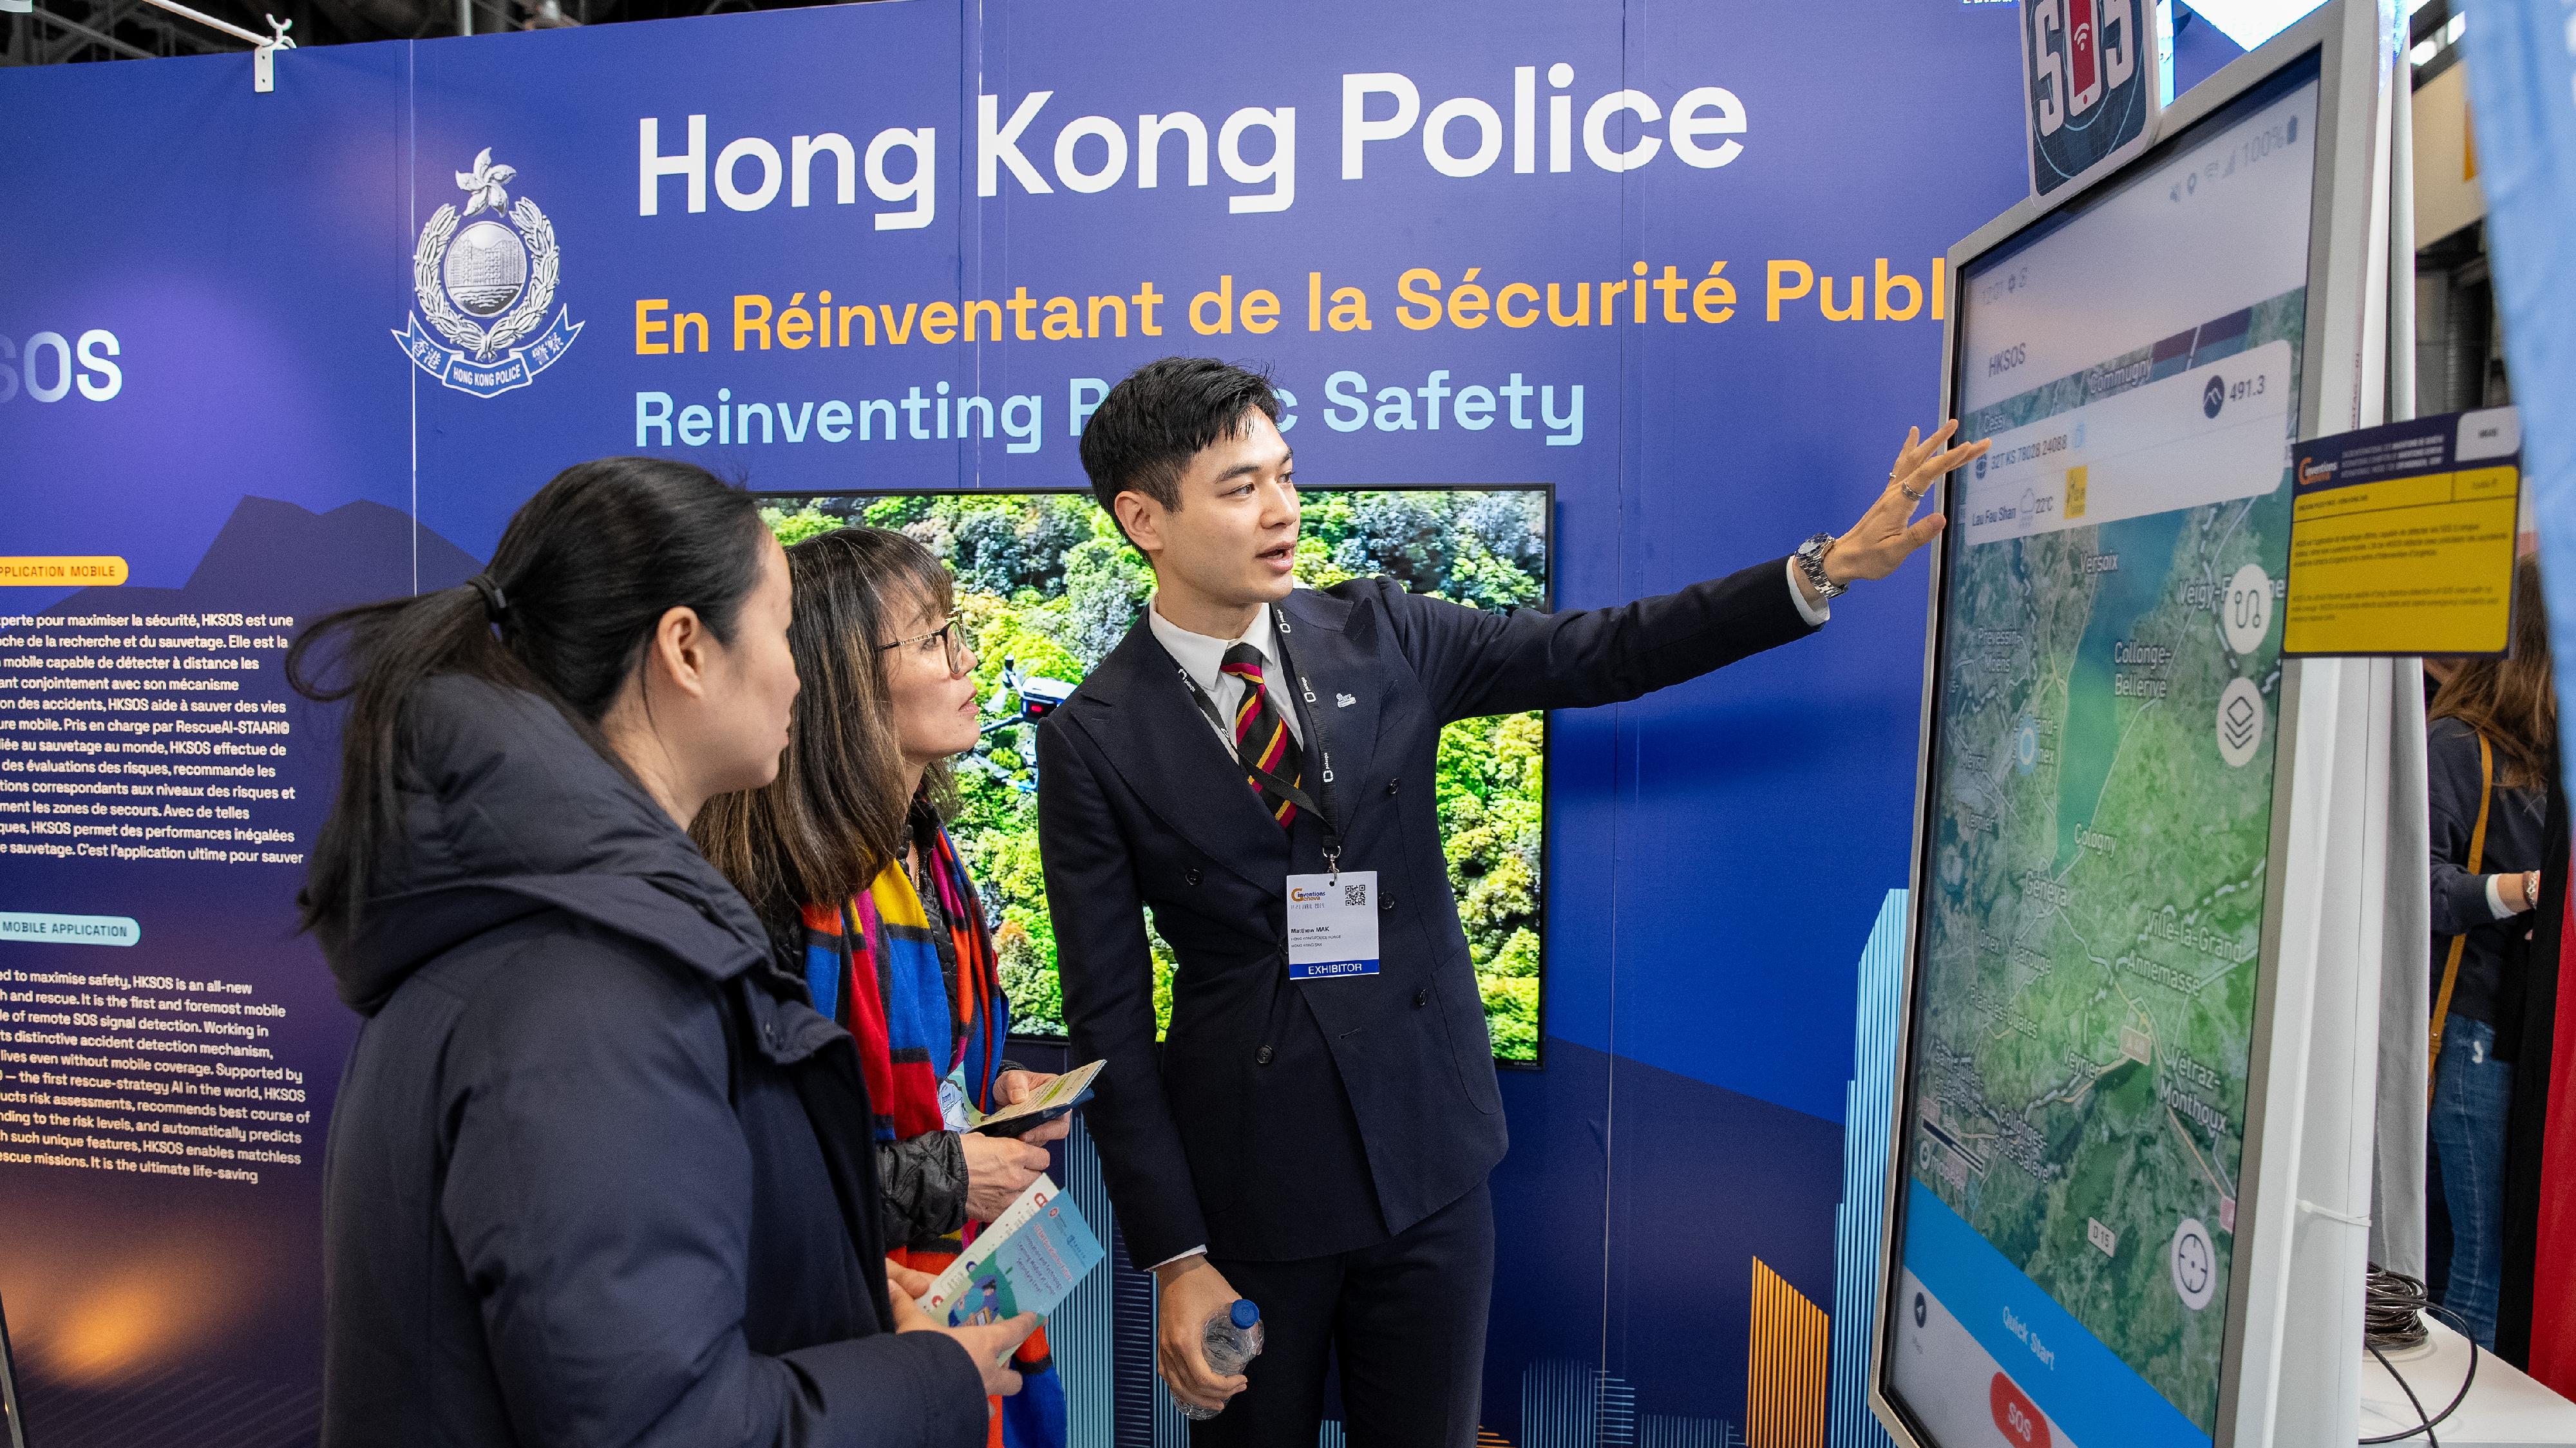 其中一項獲奬參賽項目HKSOS手機應用程式 — 配合全新自動意外偵測功能保障市民生命的緊急應用程式。